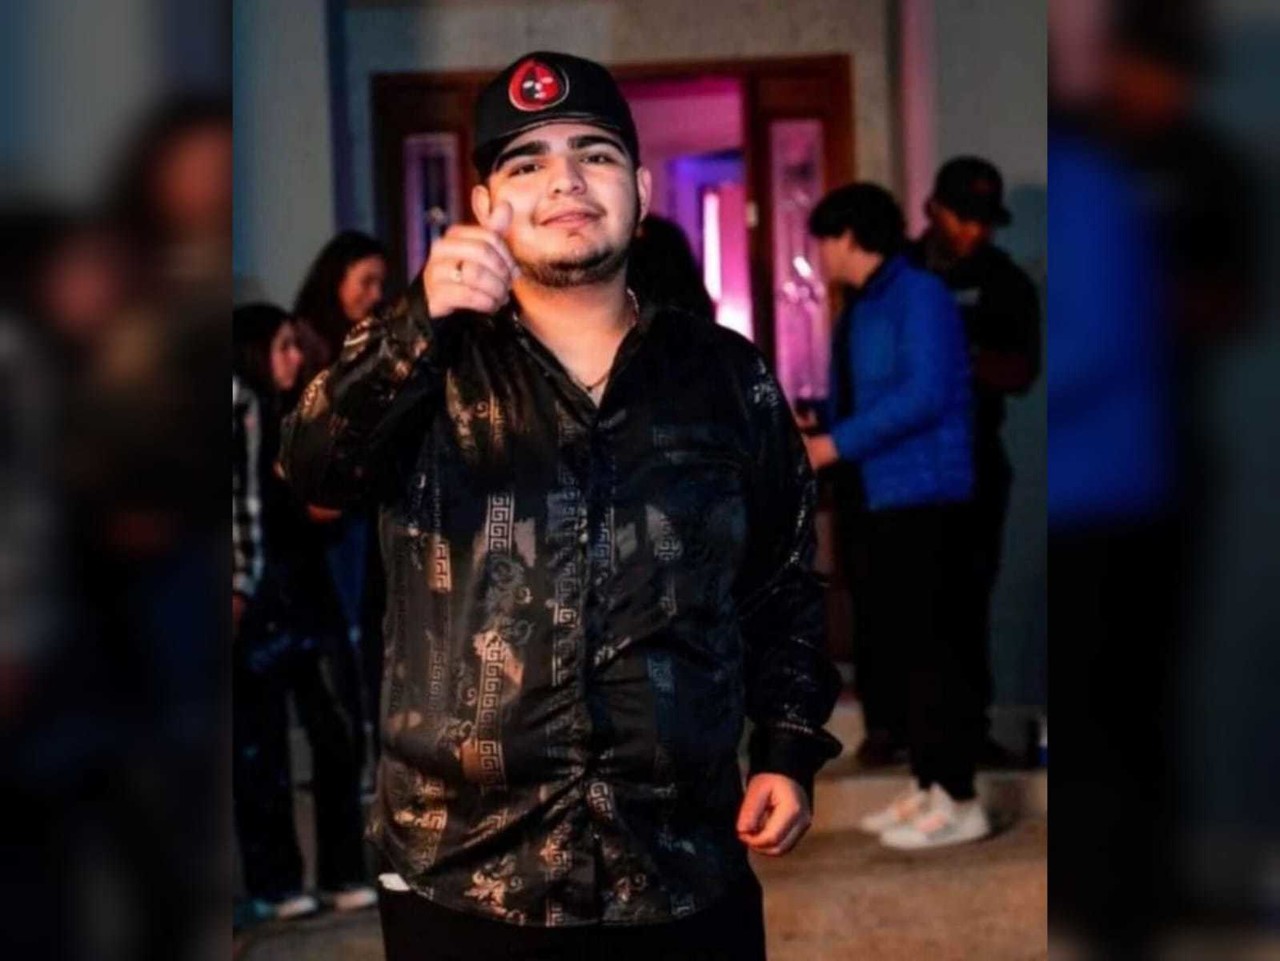 Asesinan a Chuy Montana, cantante de corridos tumbados